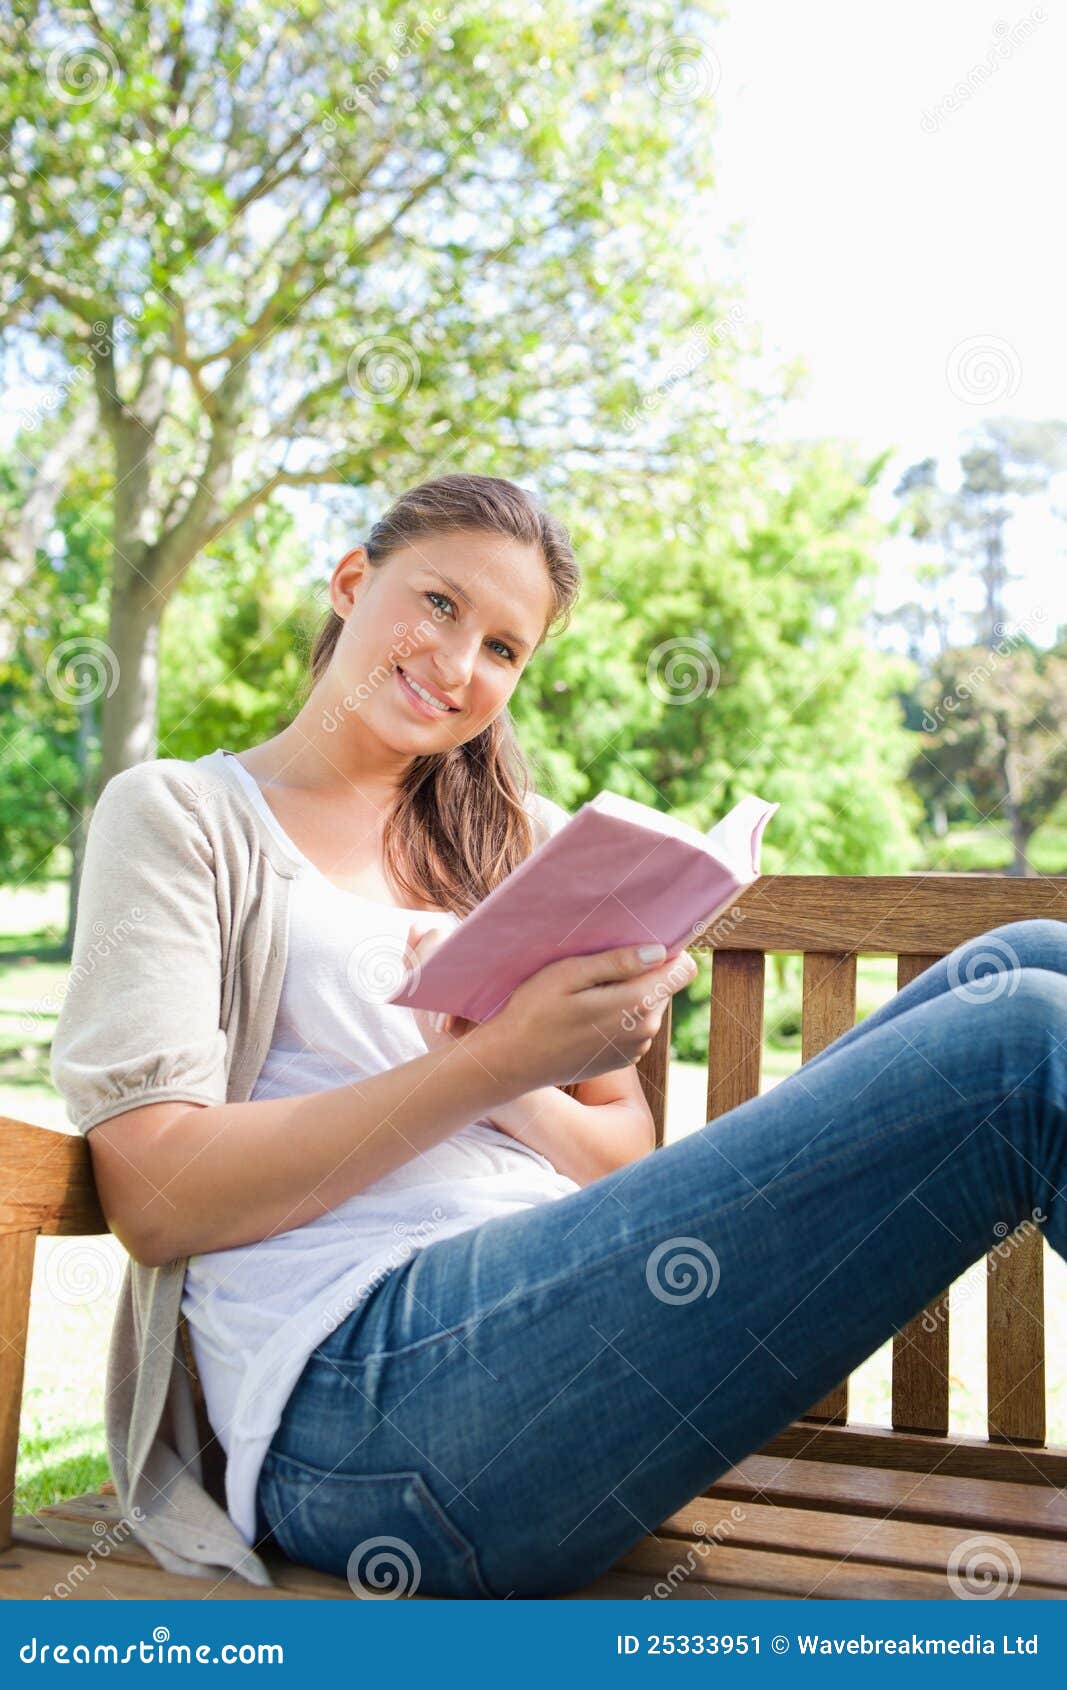 Сидящая женщина с книгой. Девушка сидит и читает на скамейке. Девушка с книжкой в руках на скамейке. Женщина сидит на улице и улыбается. Женщина сидит и читает книгу.